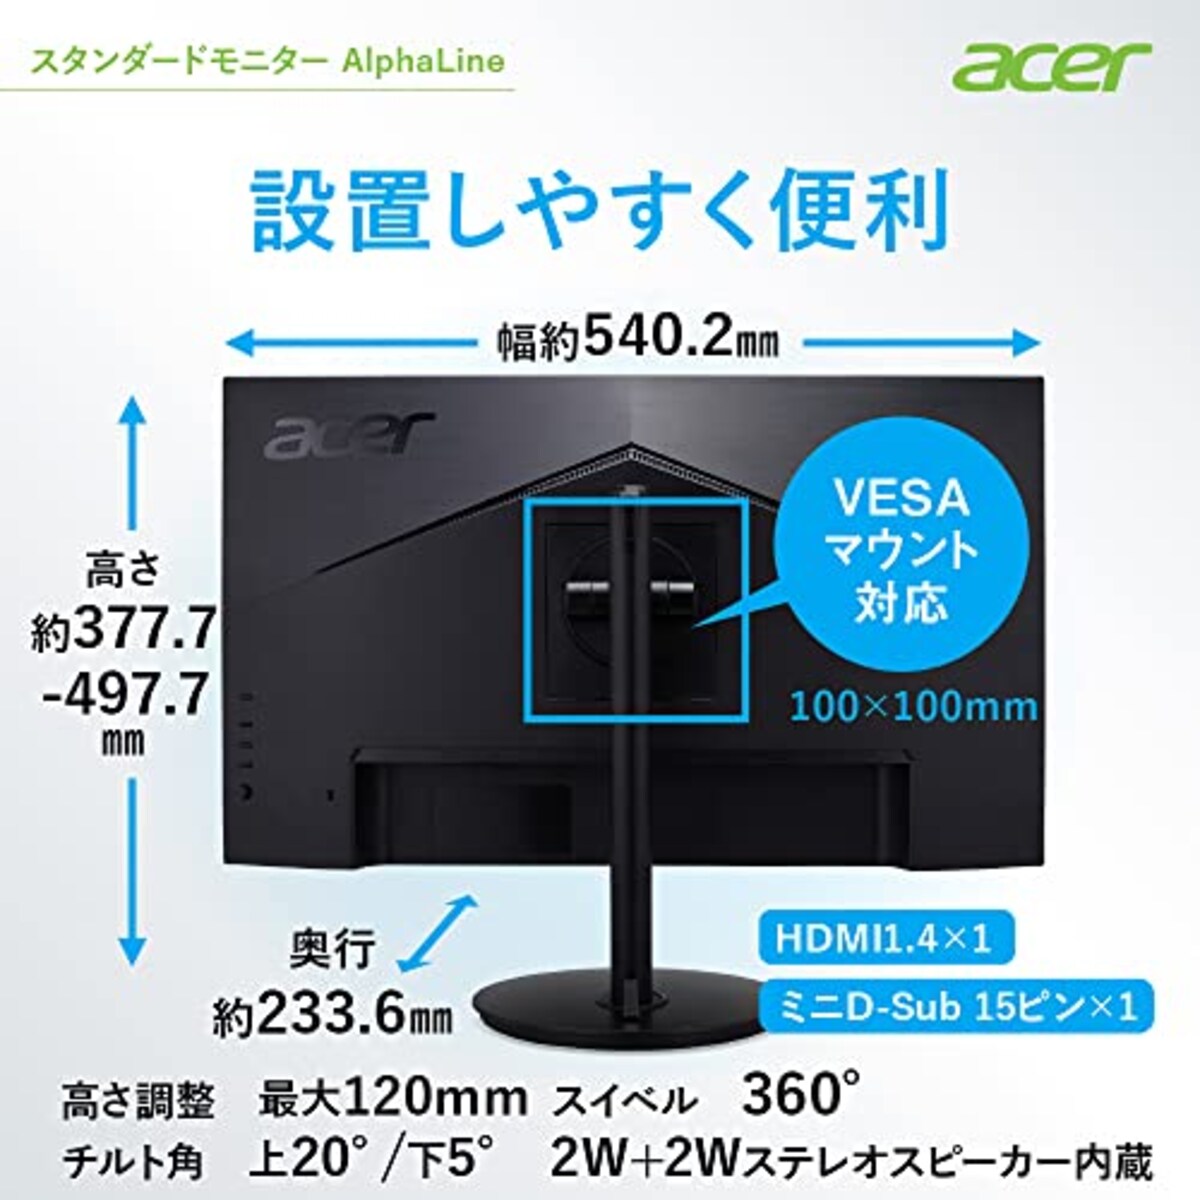  Acer モニター AlphaLine CBA242YAbmirx 23.8インチ VA 非光沢 フルHD 75Hz/1ms (VRB)HDMI ミニD-Sub 15 VESAマウント対応 スピーカー内蔵 高さ調整 チルト スイベル ピボッド機能 広い視野角178° フリッカーレス ブルーライト軽減 フレームレスデザイン画像7 